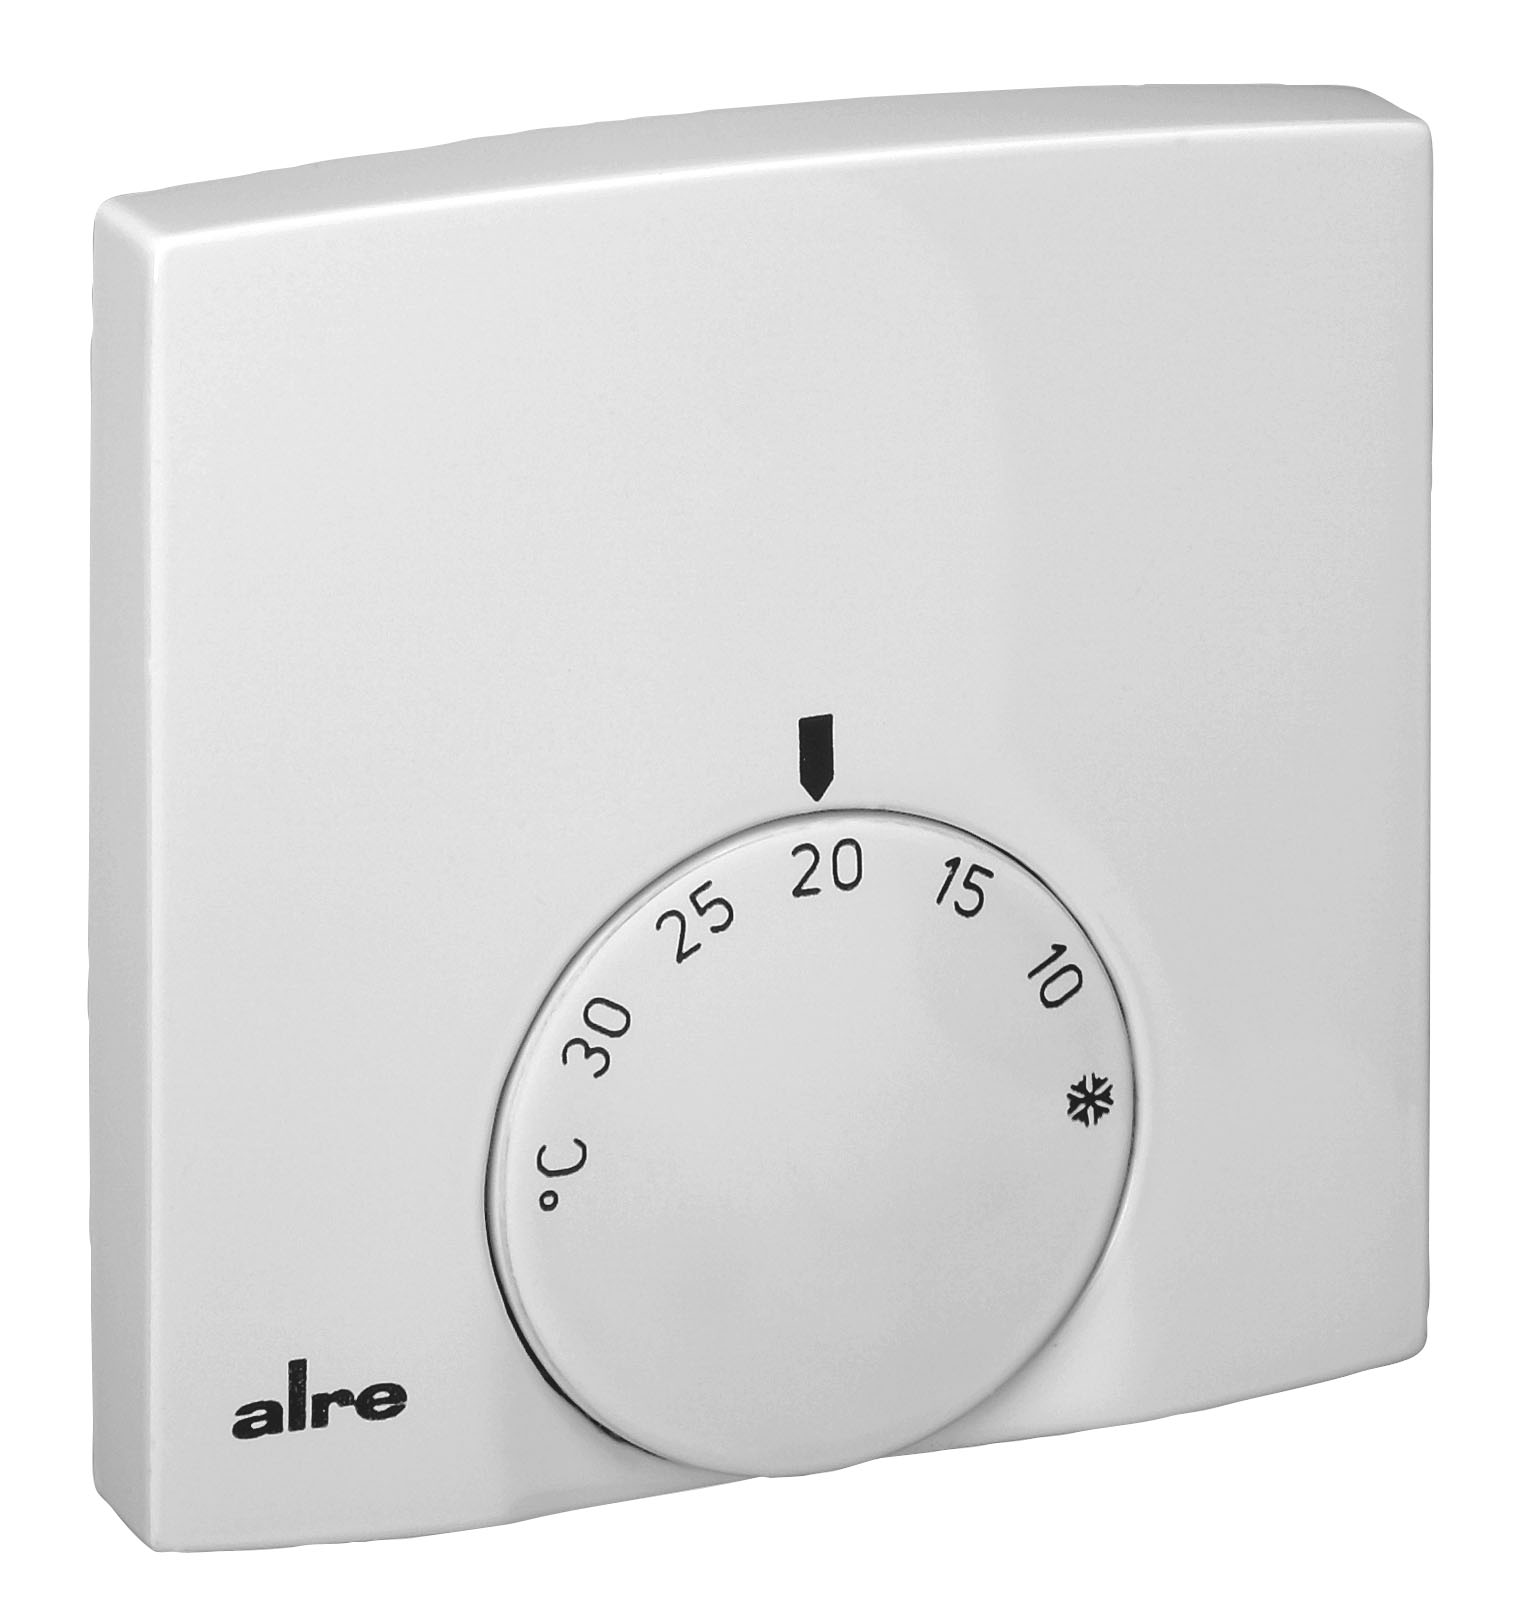 Alre-it Raumtemperaturregler AP 5-30C,Öffner2A,230V RTBSB-201.000